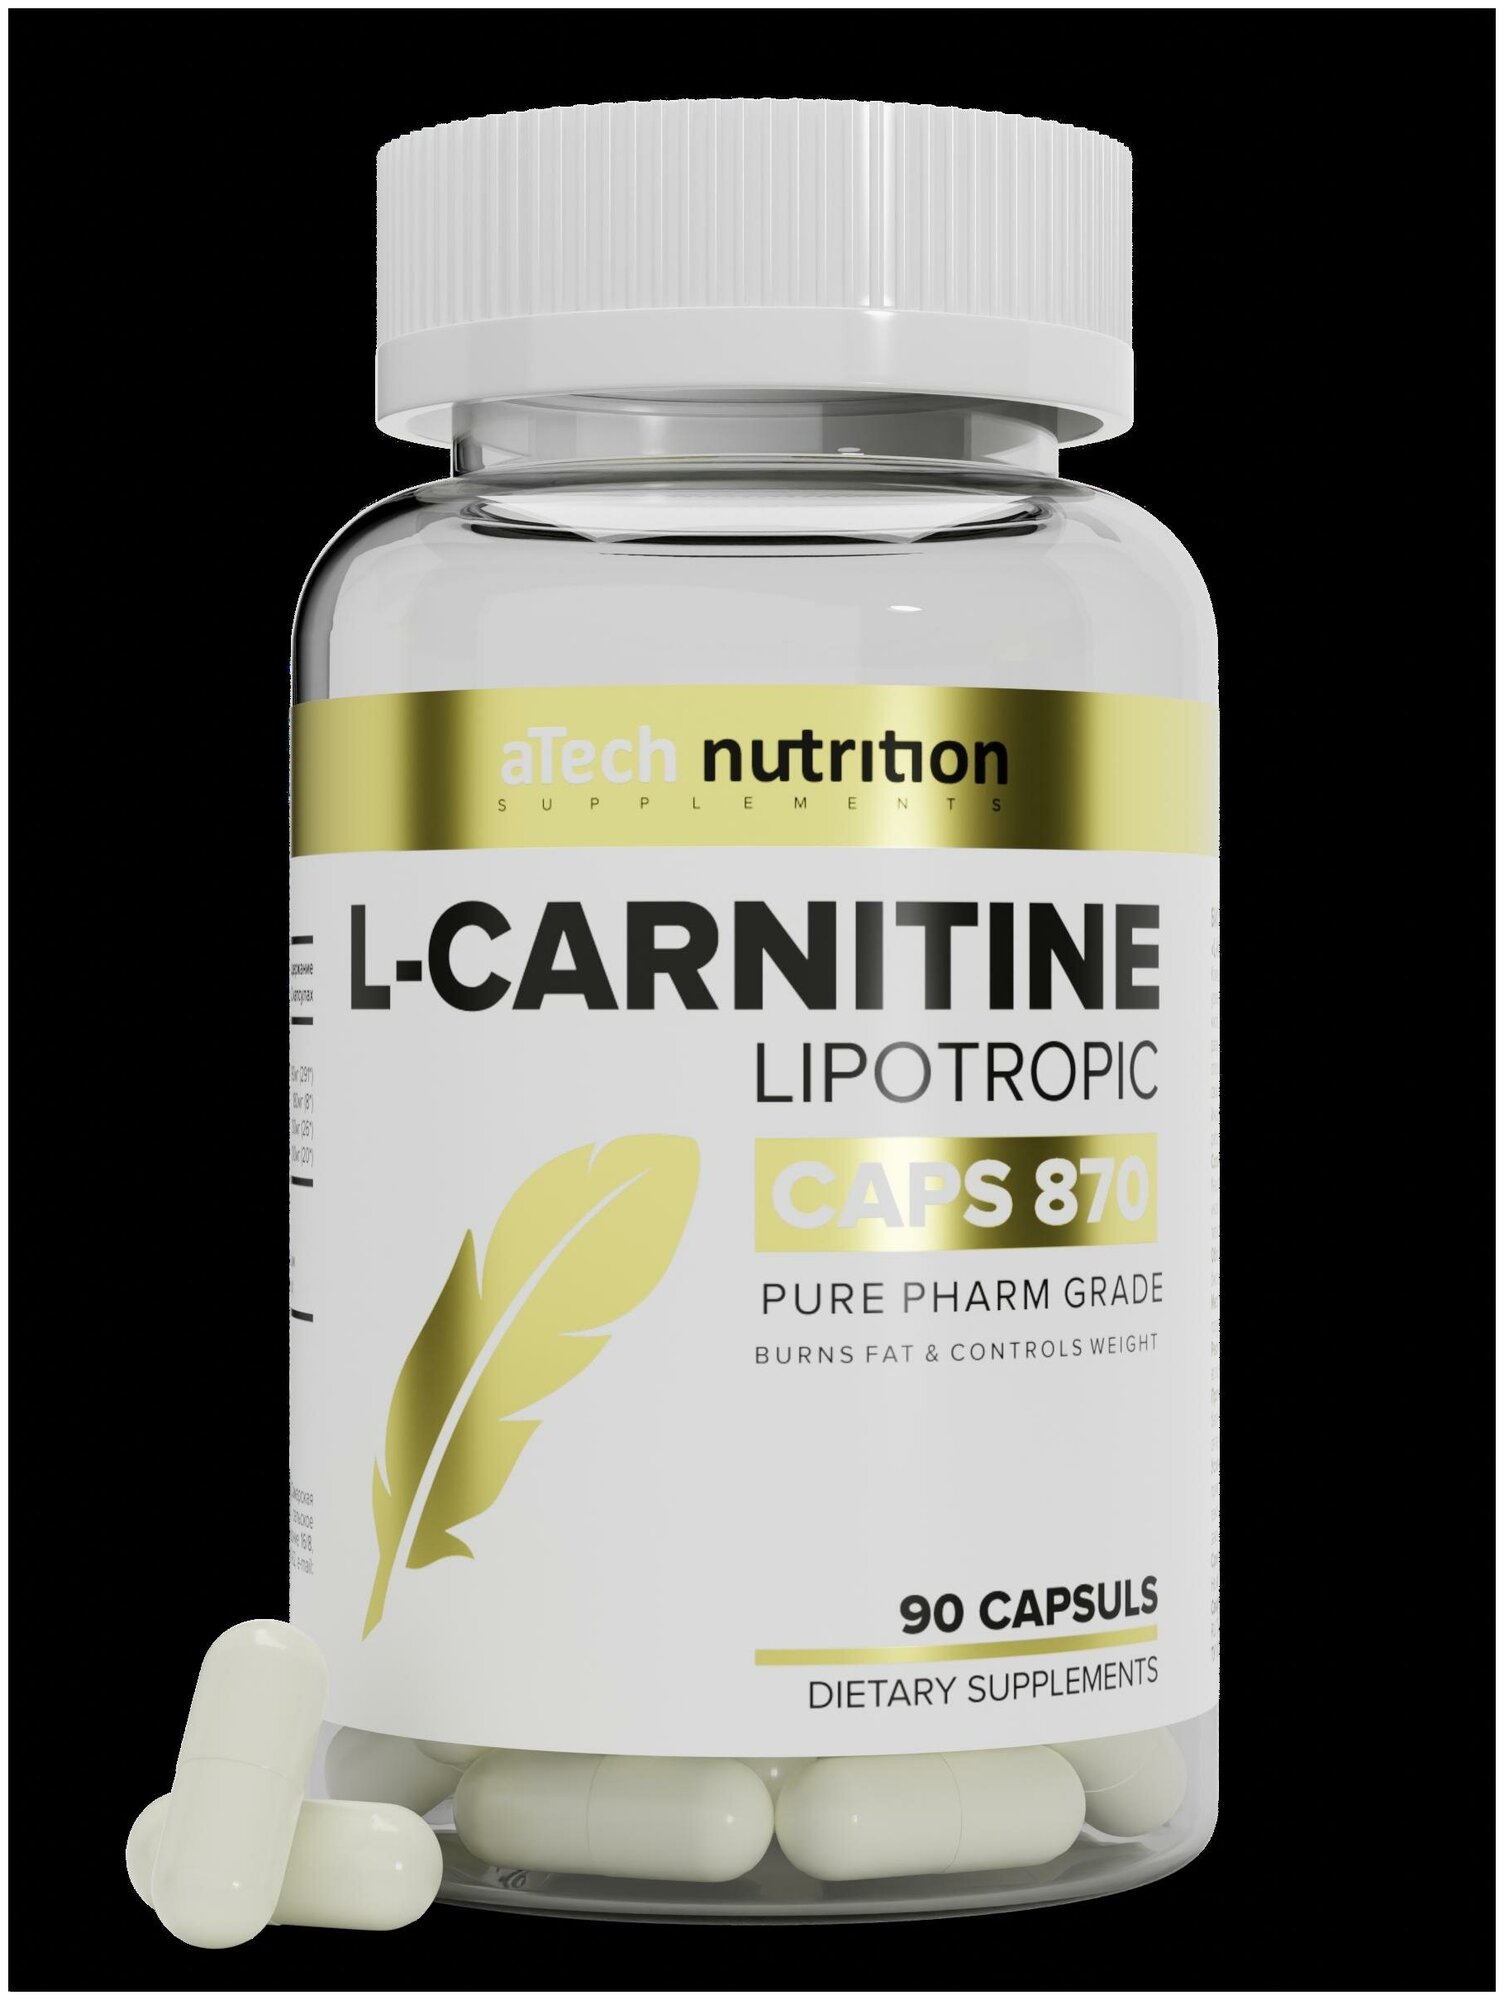 L-CARNITINE "LIPOTROPIC" , aTech Nutrition 90 